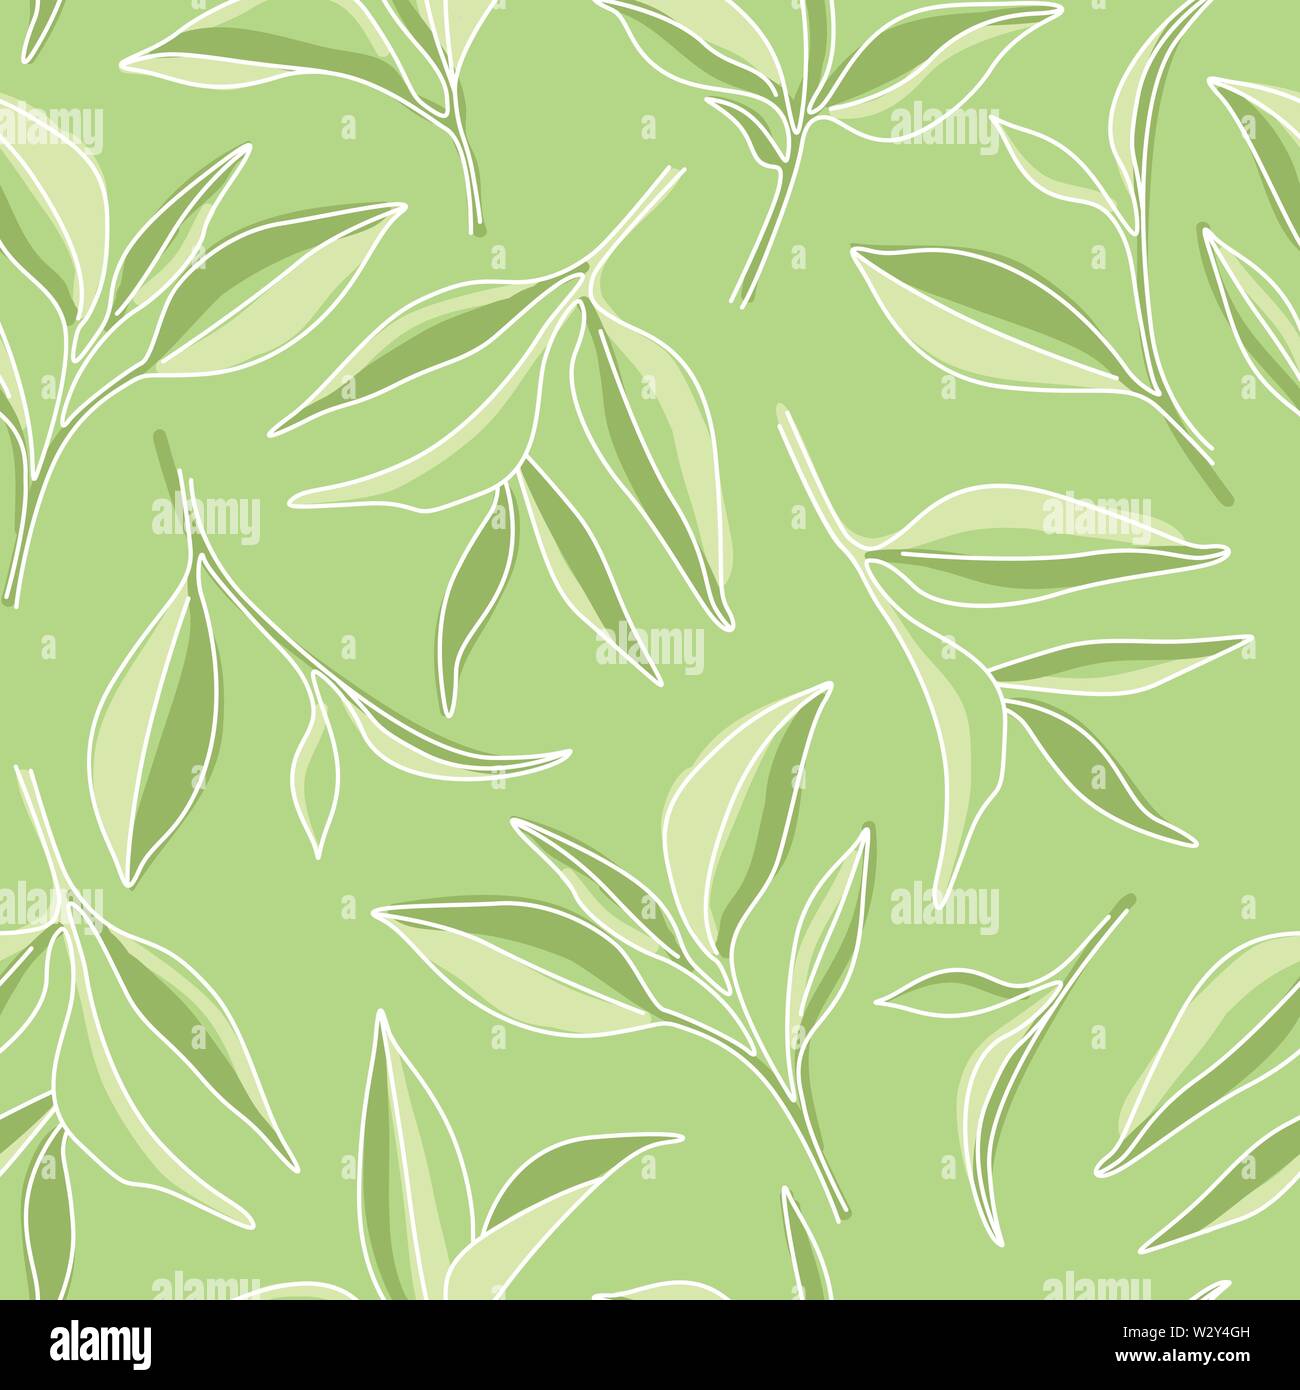 Matcha grüner Tee Blätter Einfache grafische nahtlose Muster auf grünem Hintergrund Stock Vektor